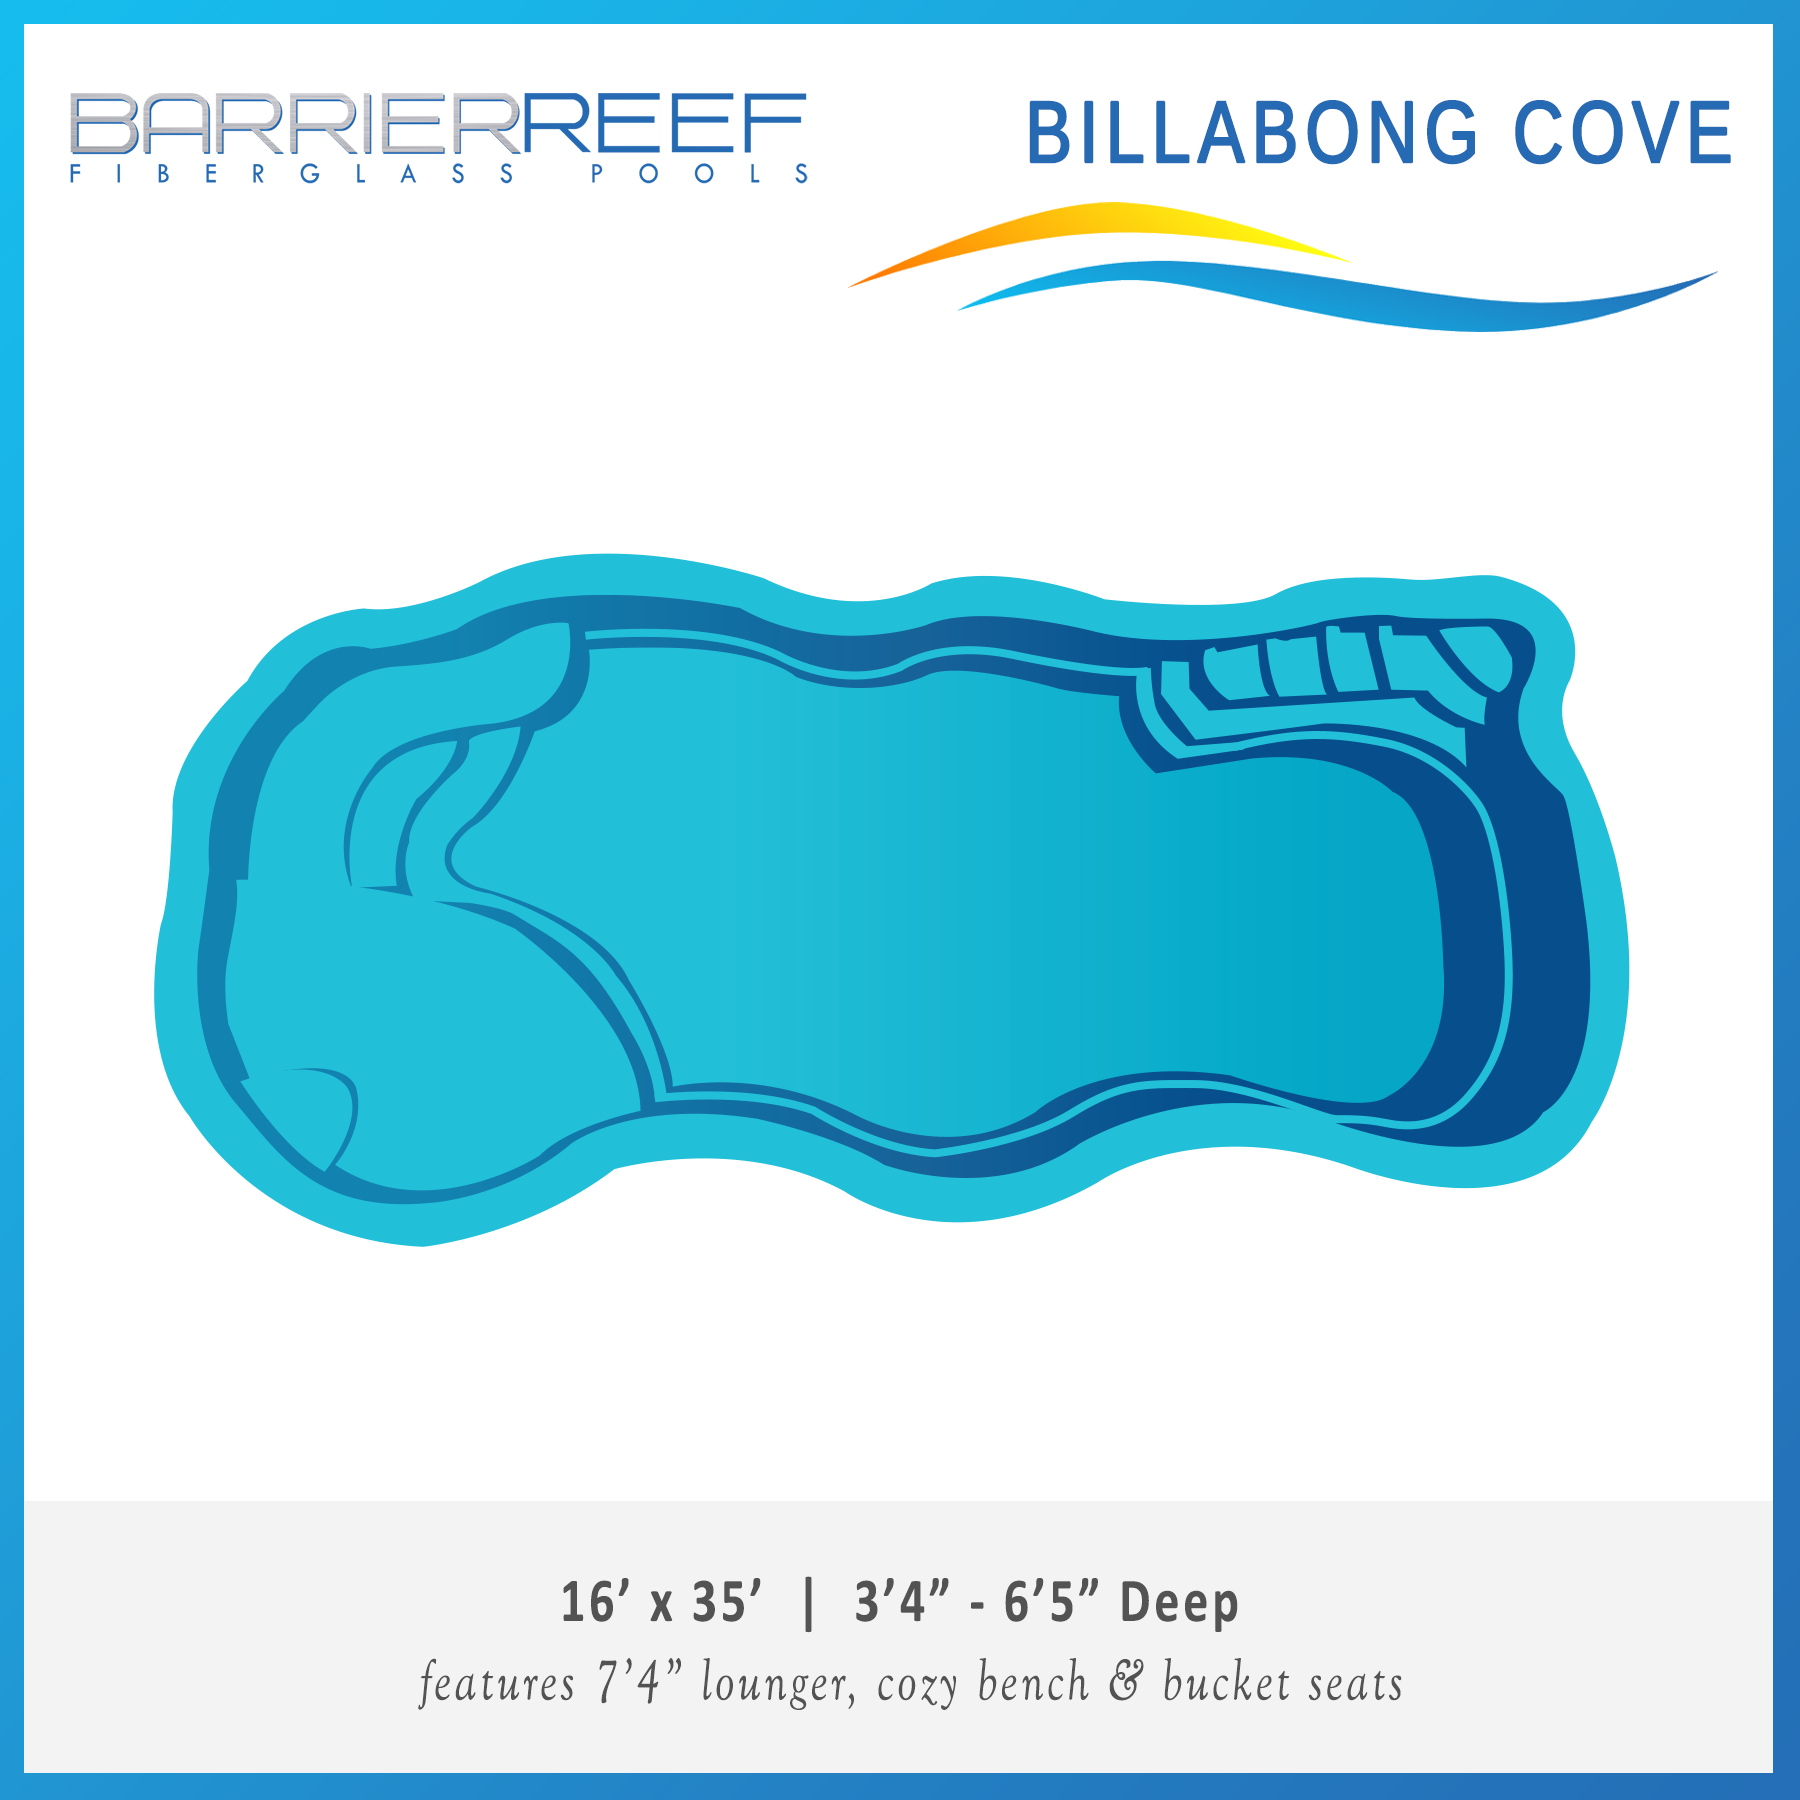 Billabong Cove Barrier Reef Fiberglass Pool